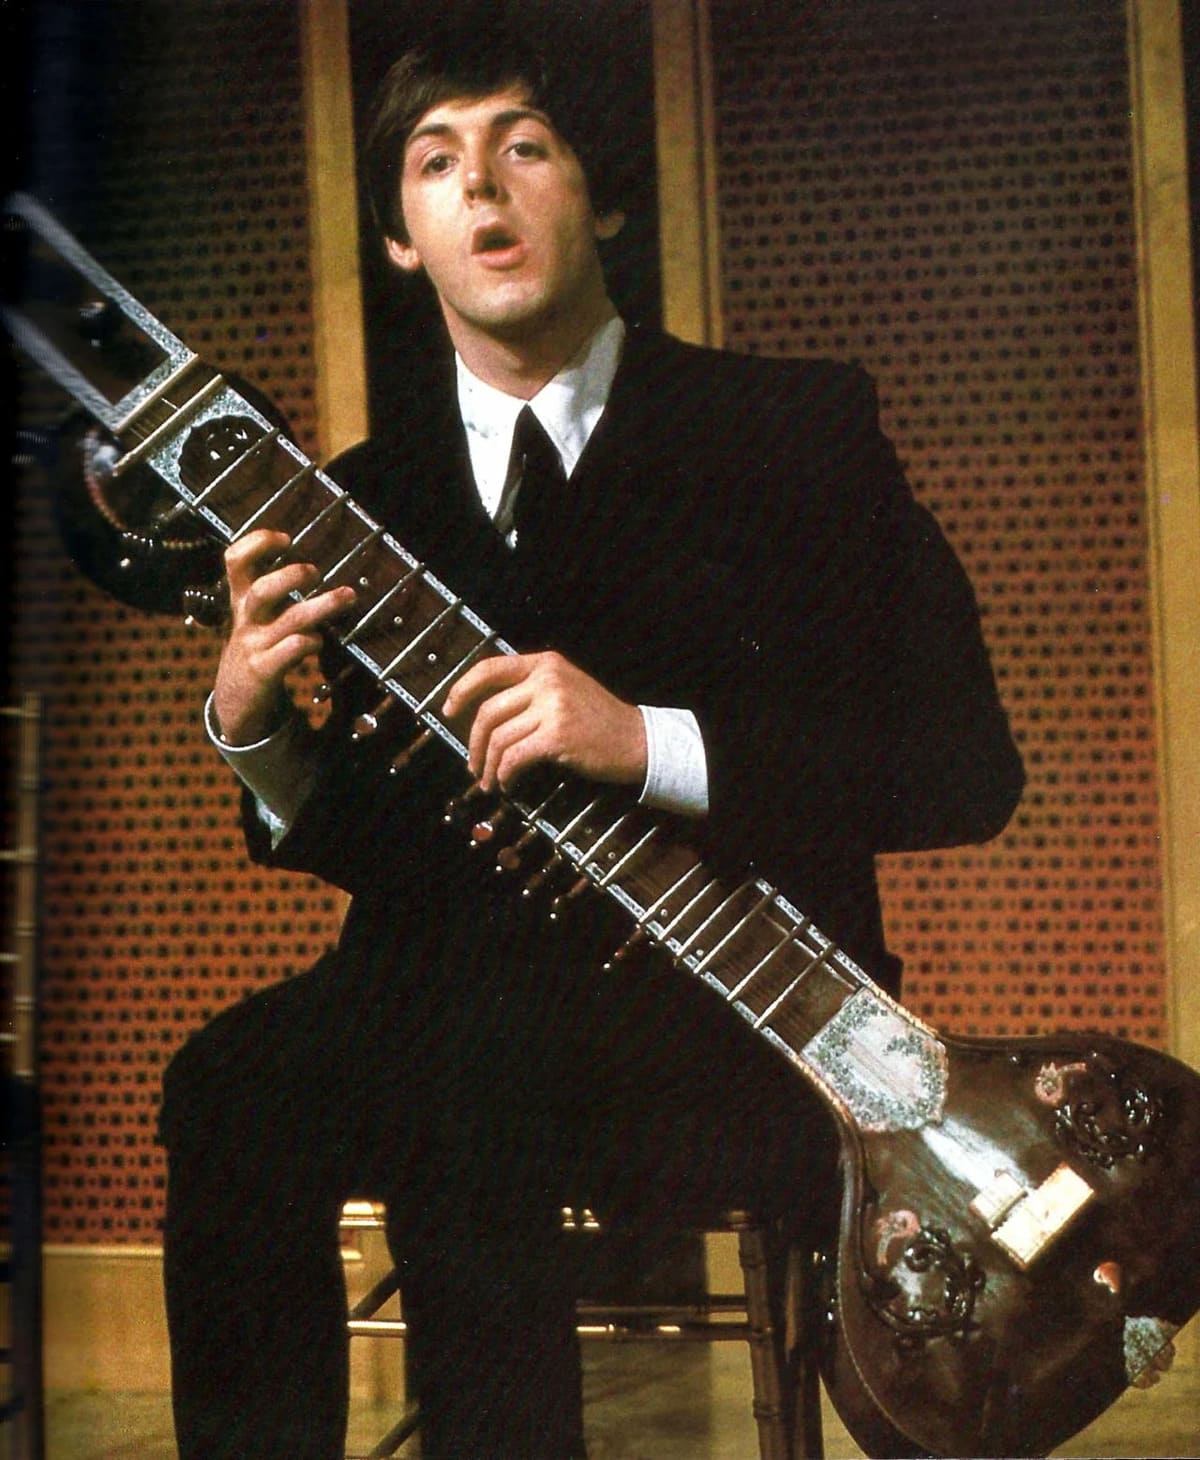 Paul McCartney plays the sitar